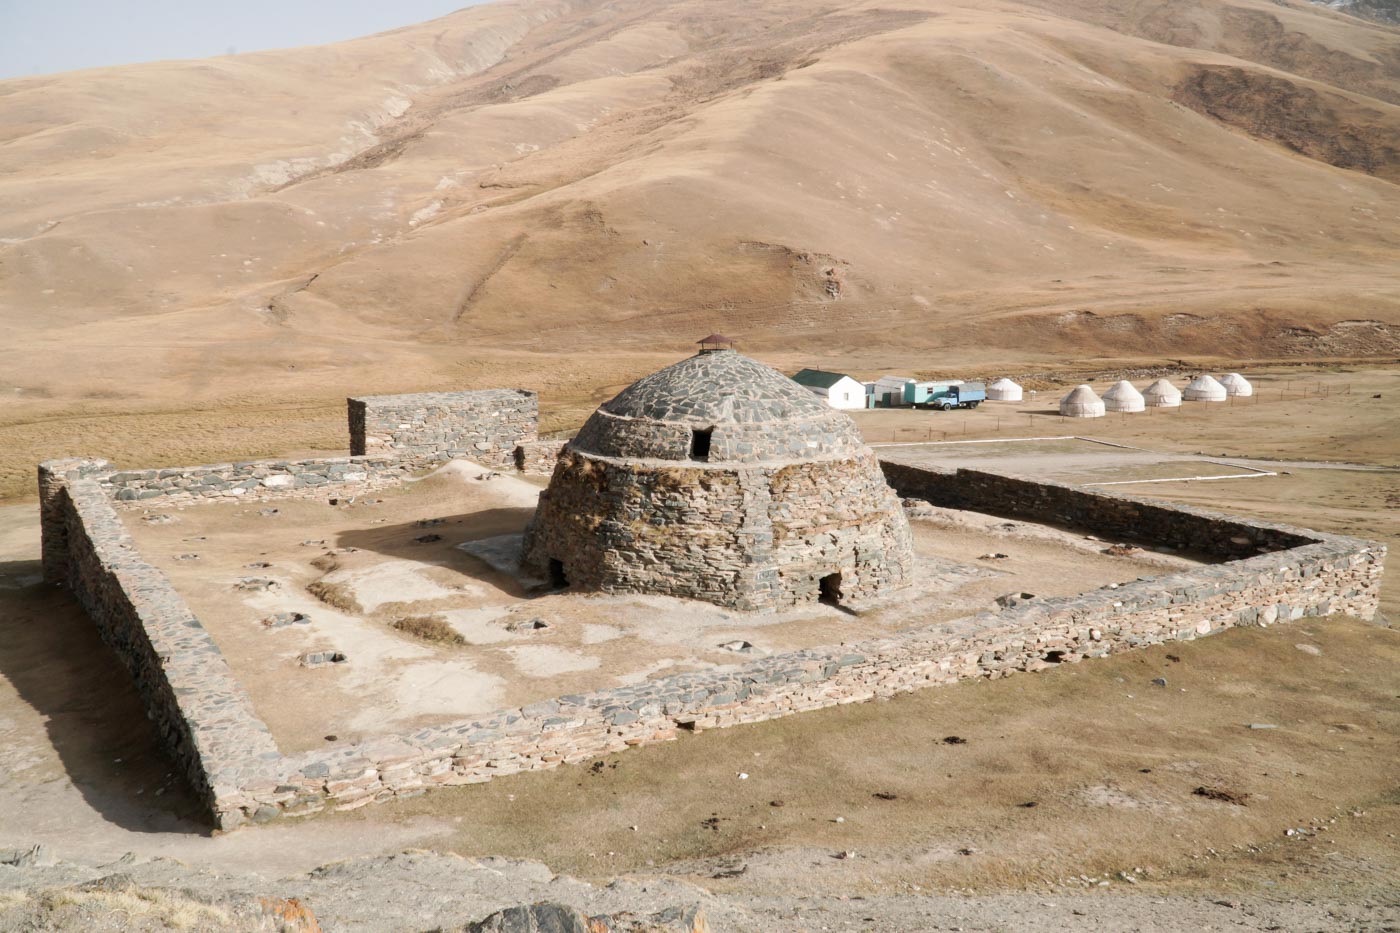 Tash Rabat - an old caravanserai in Kyrgyzstan